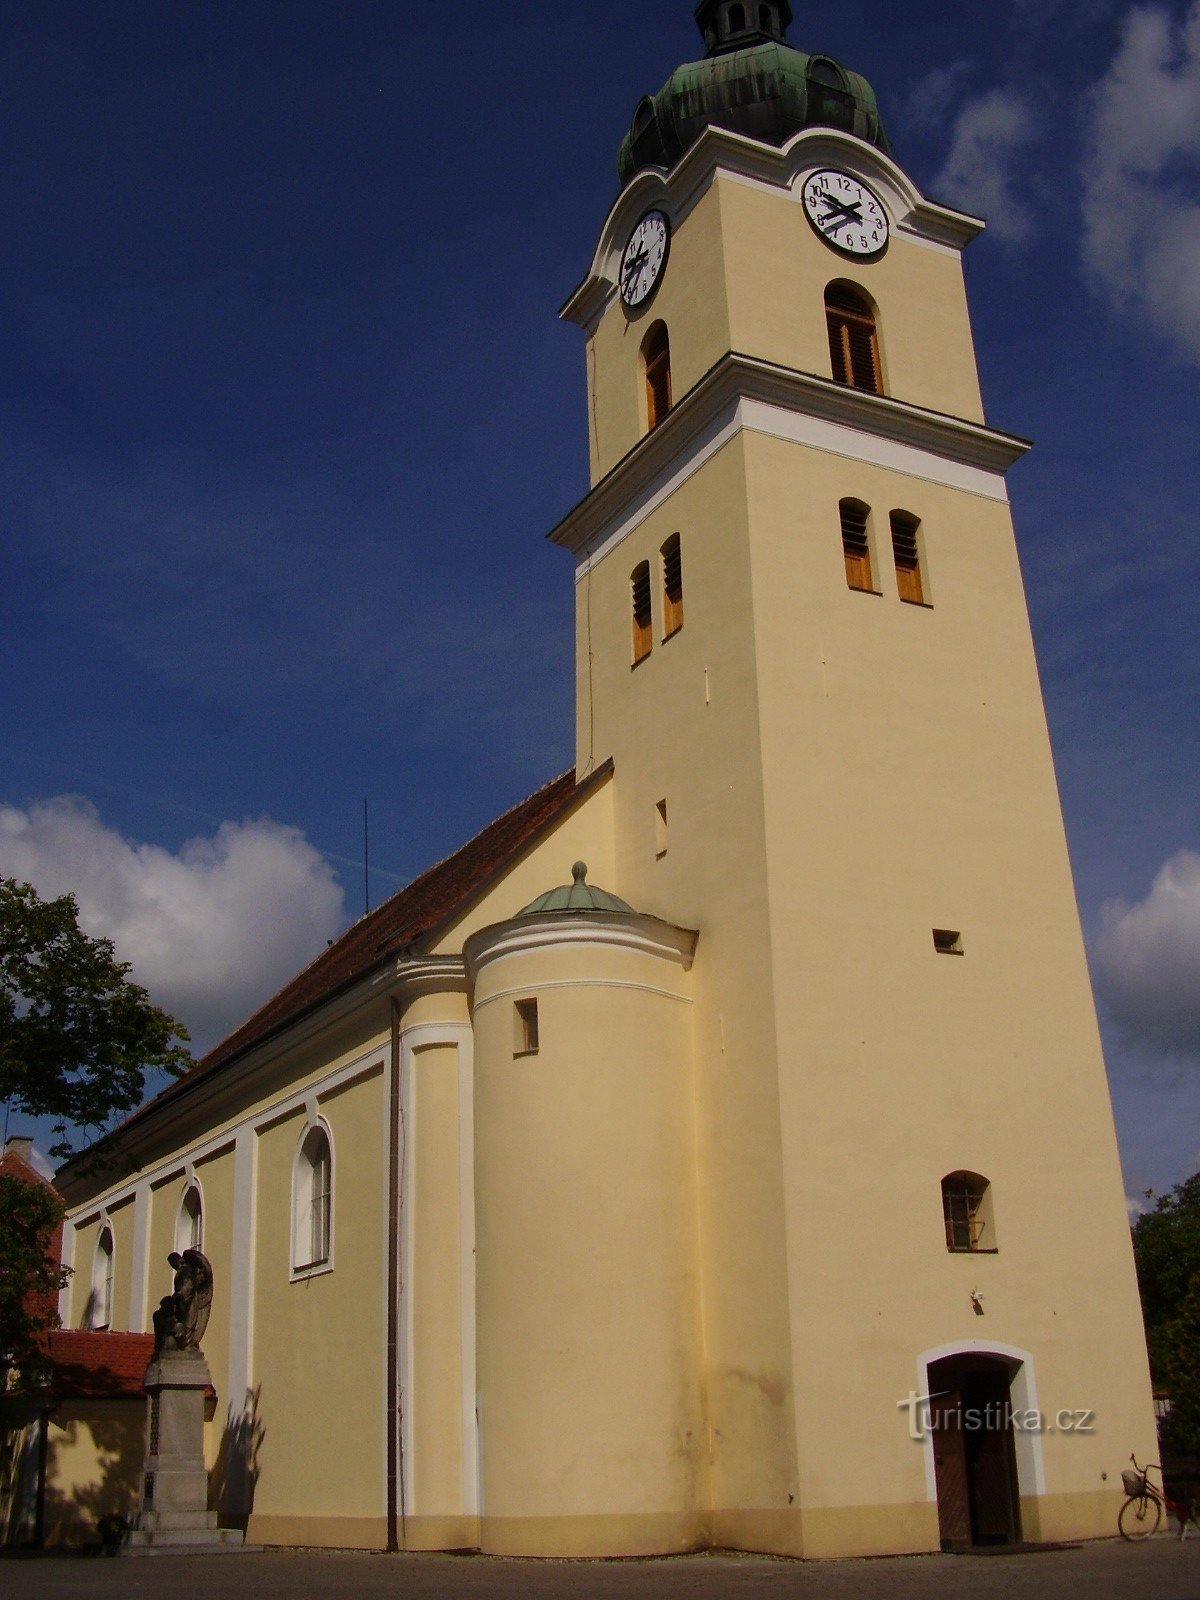 Kyrkan St. Ondřej i Blatnice